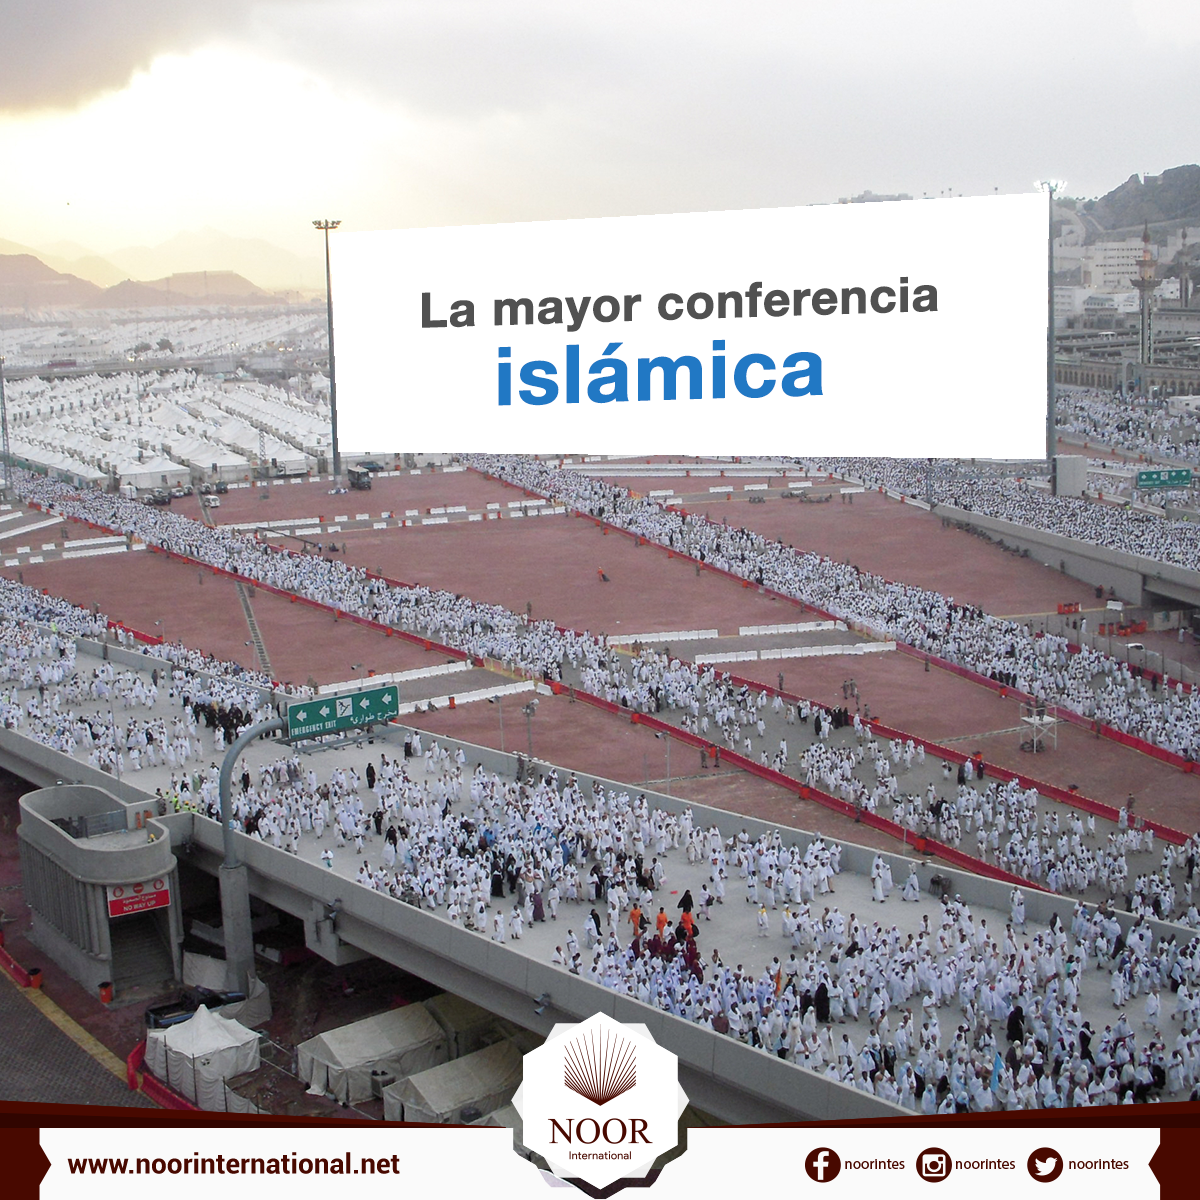 La mayor conferencia islámica